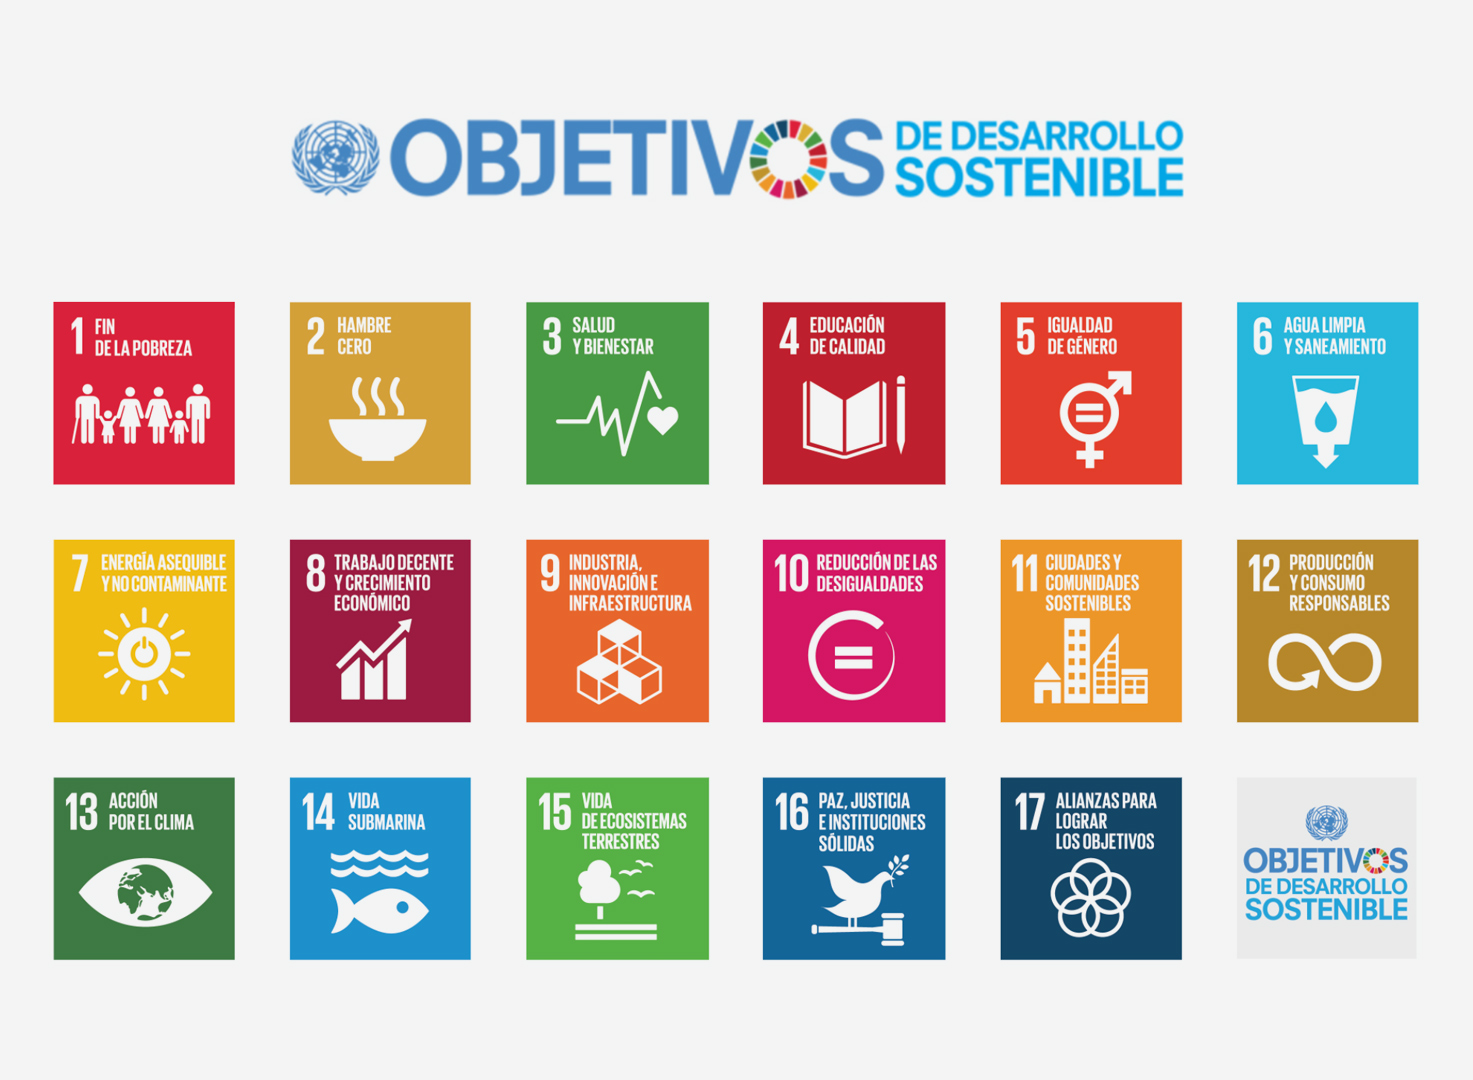 Objetivos de desarrollo sostenible.